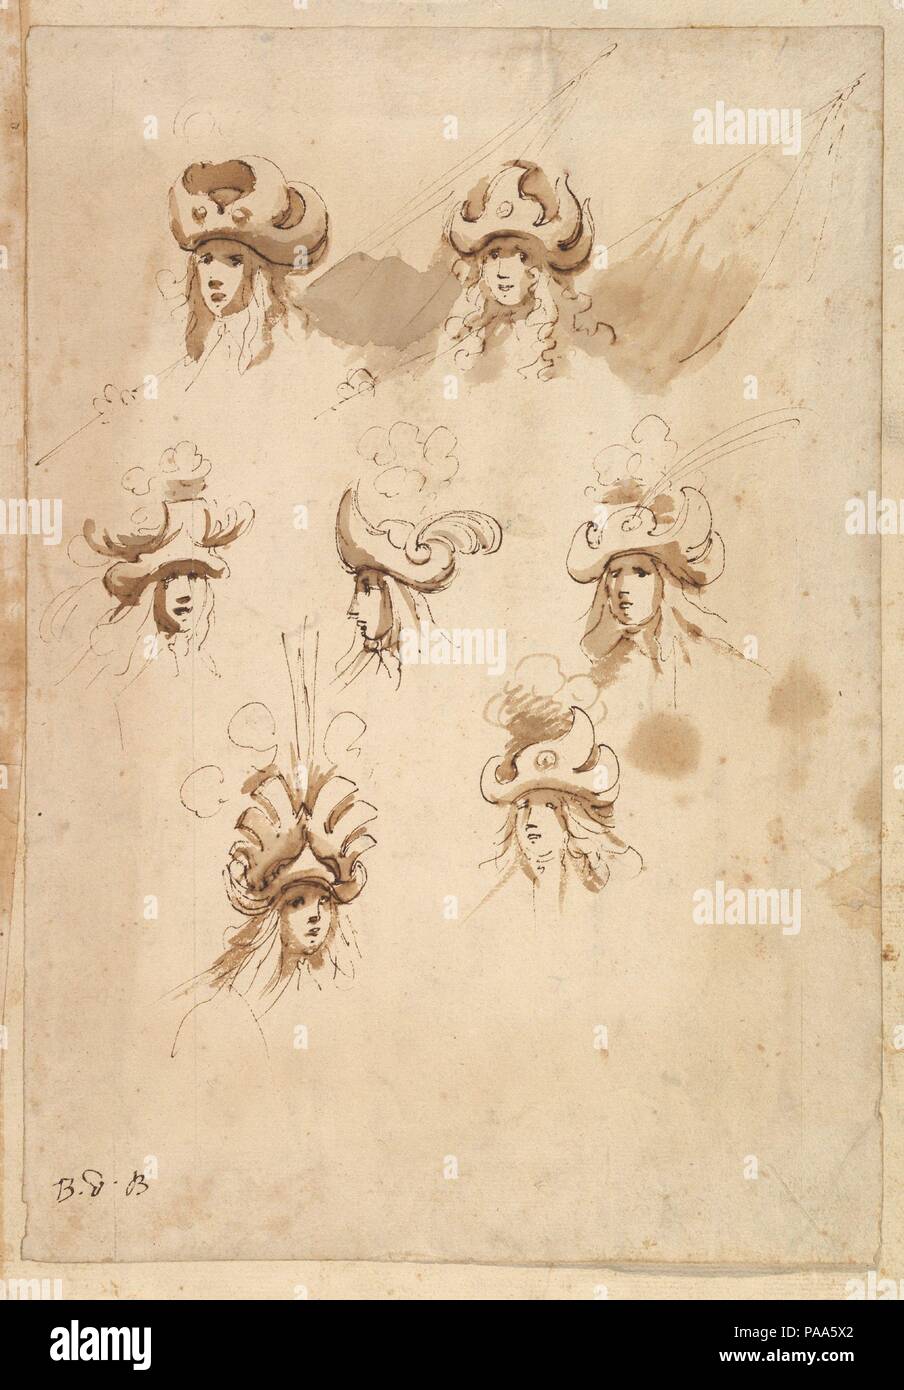 Sette progetti per cappelli. Artista: Baccio del bianco (italiano, Firenze  1604-1656 Escorial) (e workshop). Dimensioni: foglio: 13 3/8 x 9 1/4 in.  (34 x 23,5 cm). Data: ca. 1620-56. Foglio con sette